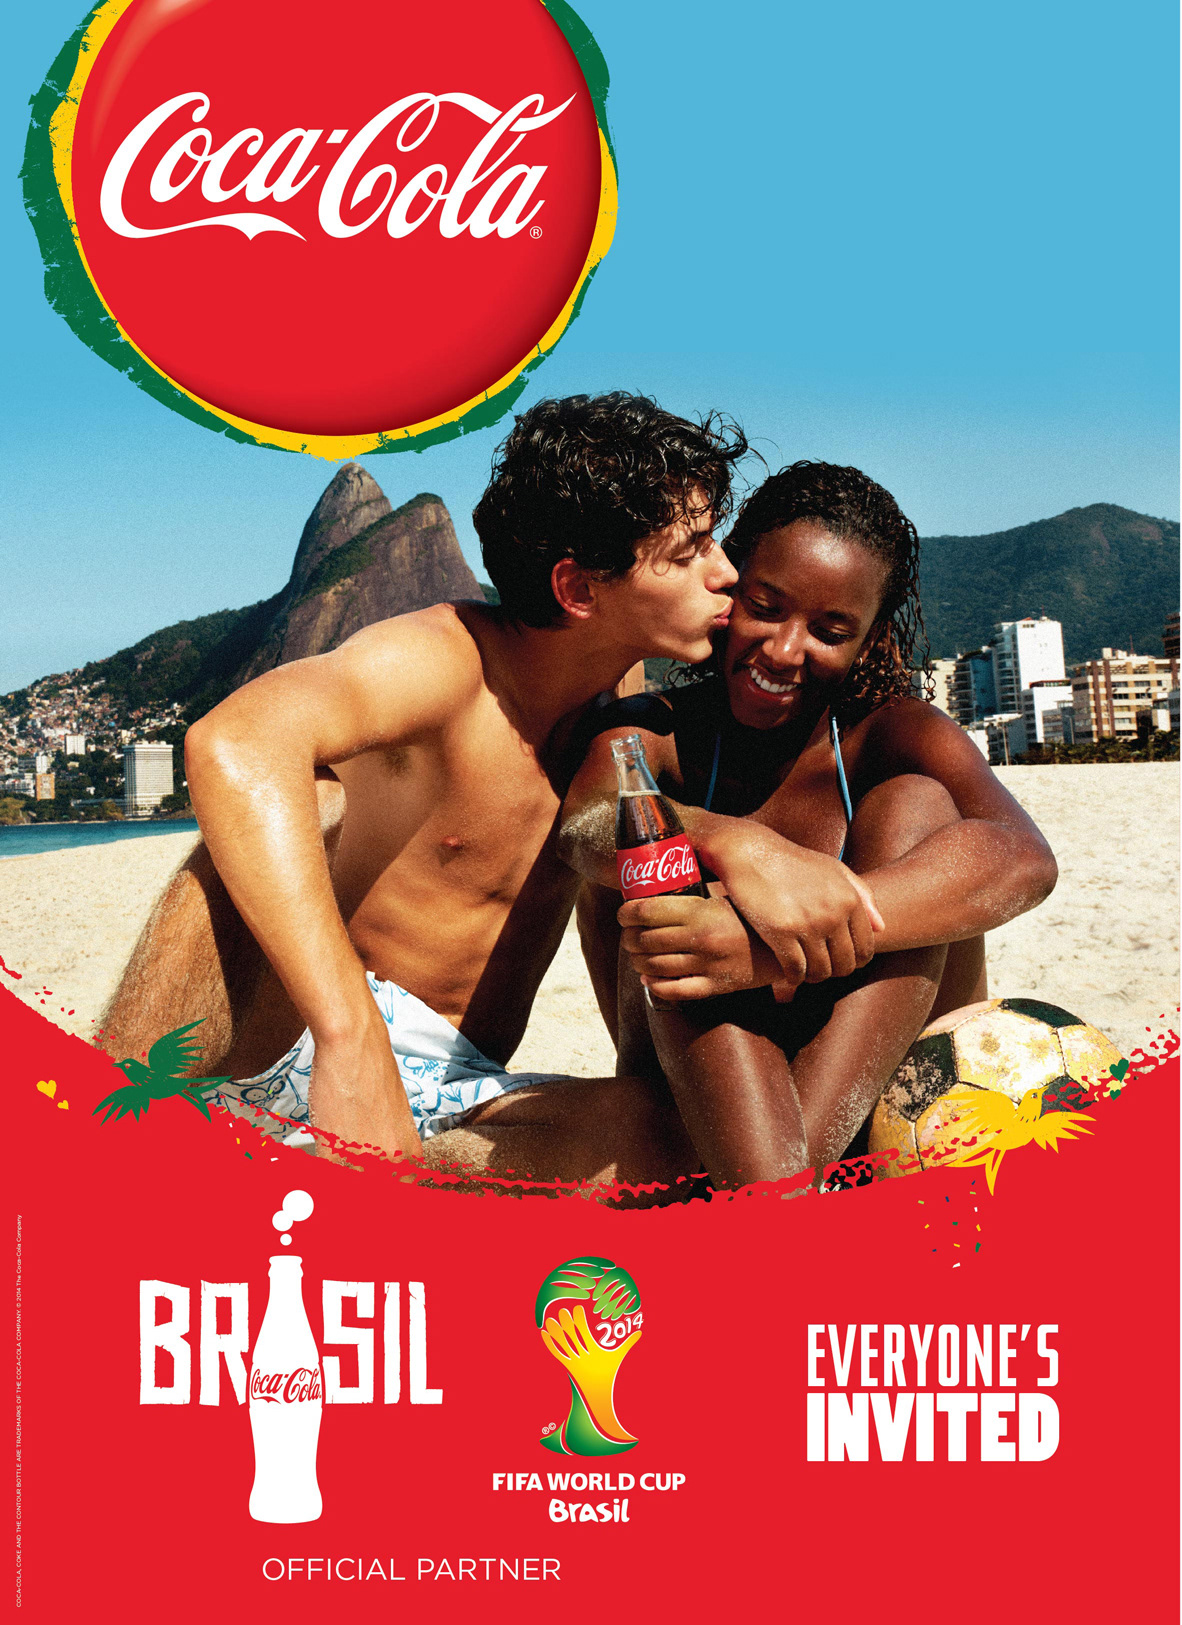 FIFA World Cup Coca-Cola Brazil